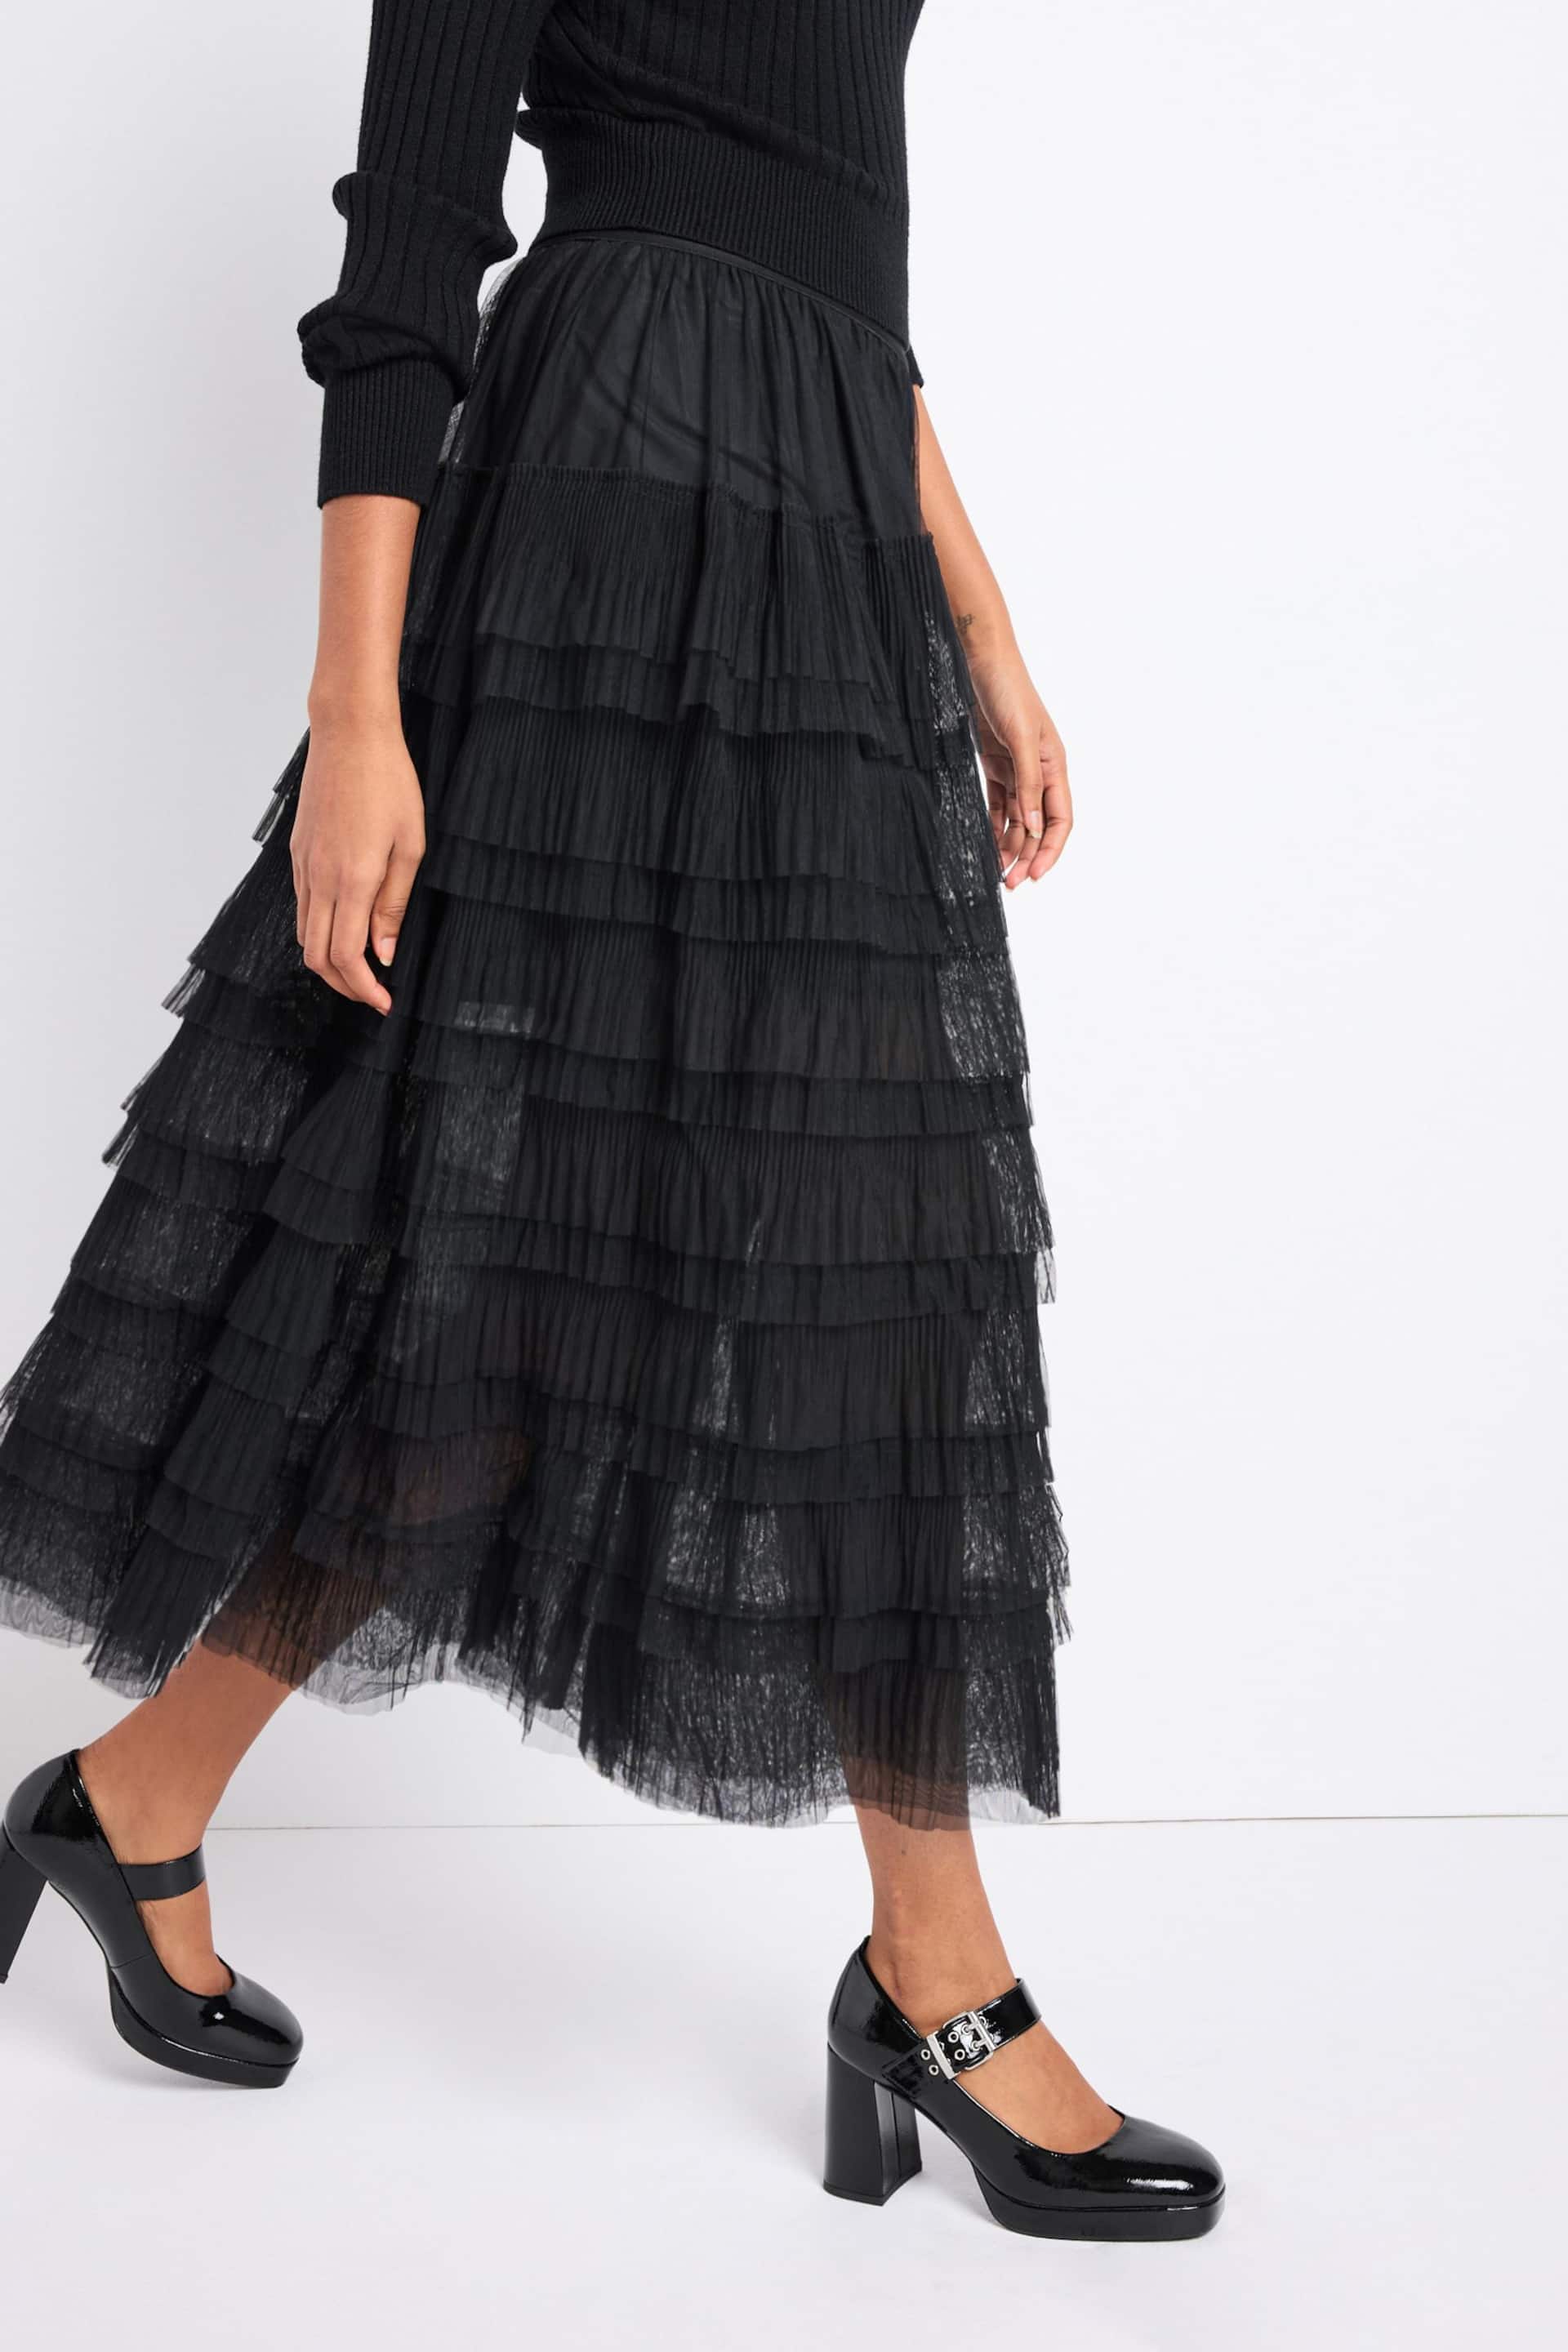 Black Mesh Tulle Midi Skirt - Image 3 of 7